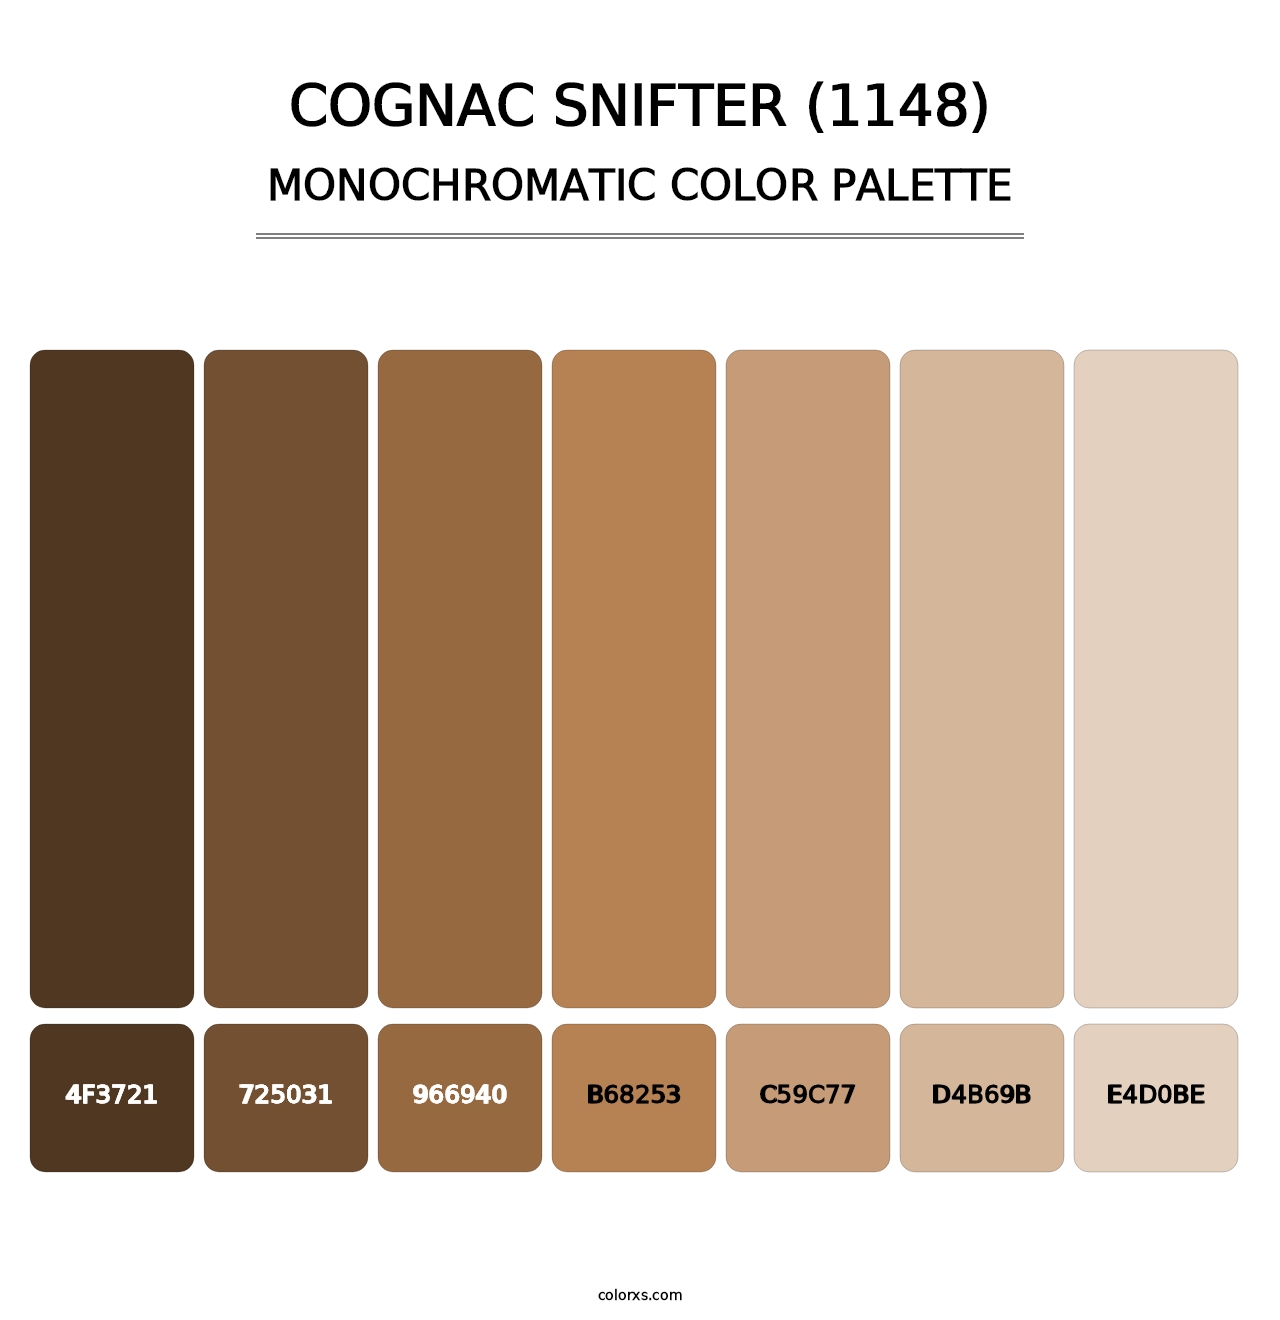 Cognac Snifter (1148) - Monochromatic Color Palette